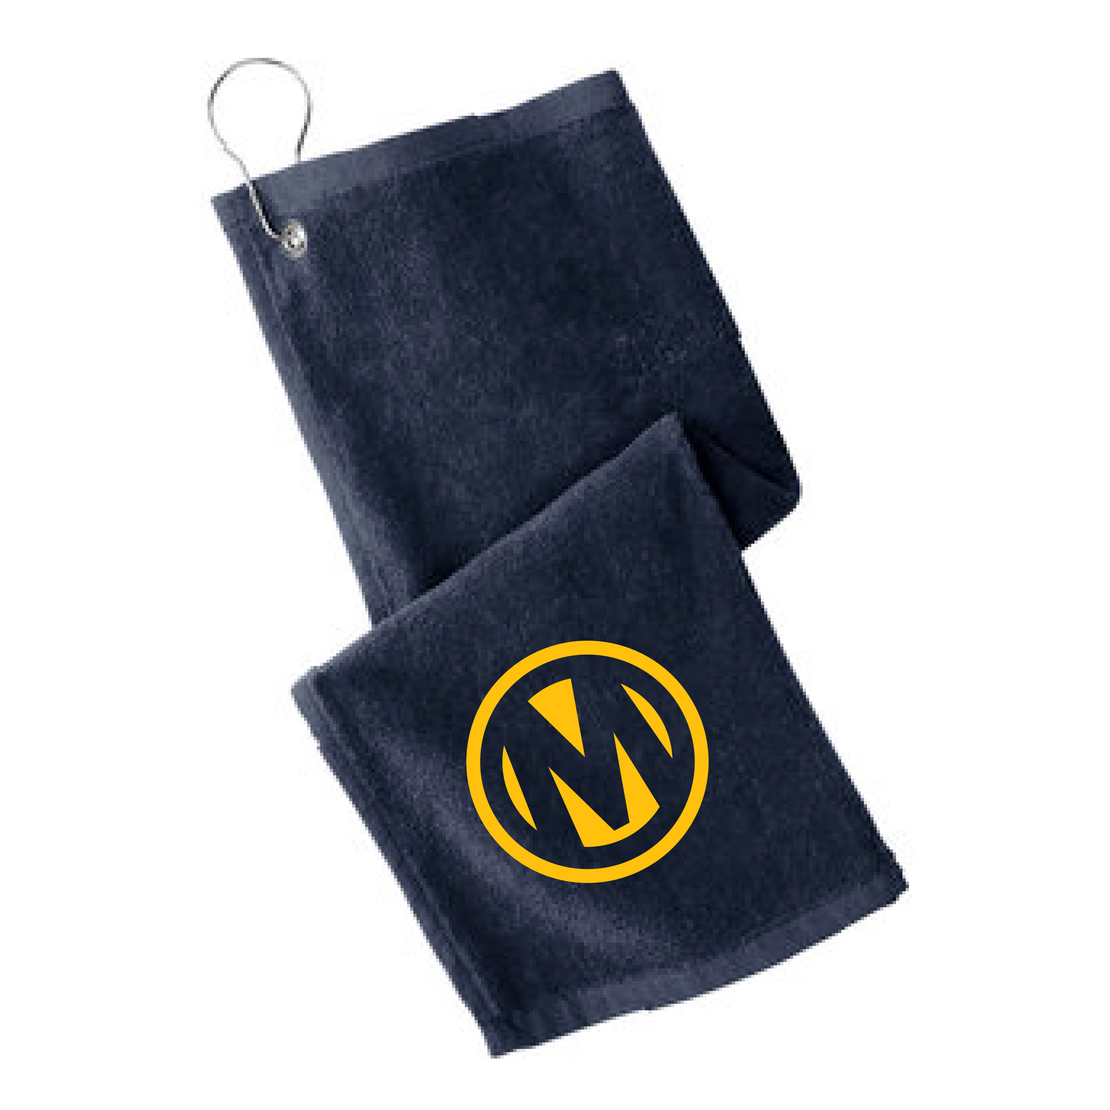 Manheim Northstar Golf Shoe Bag & Towel